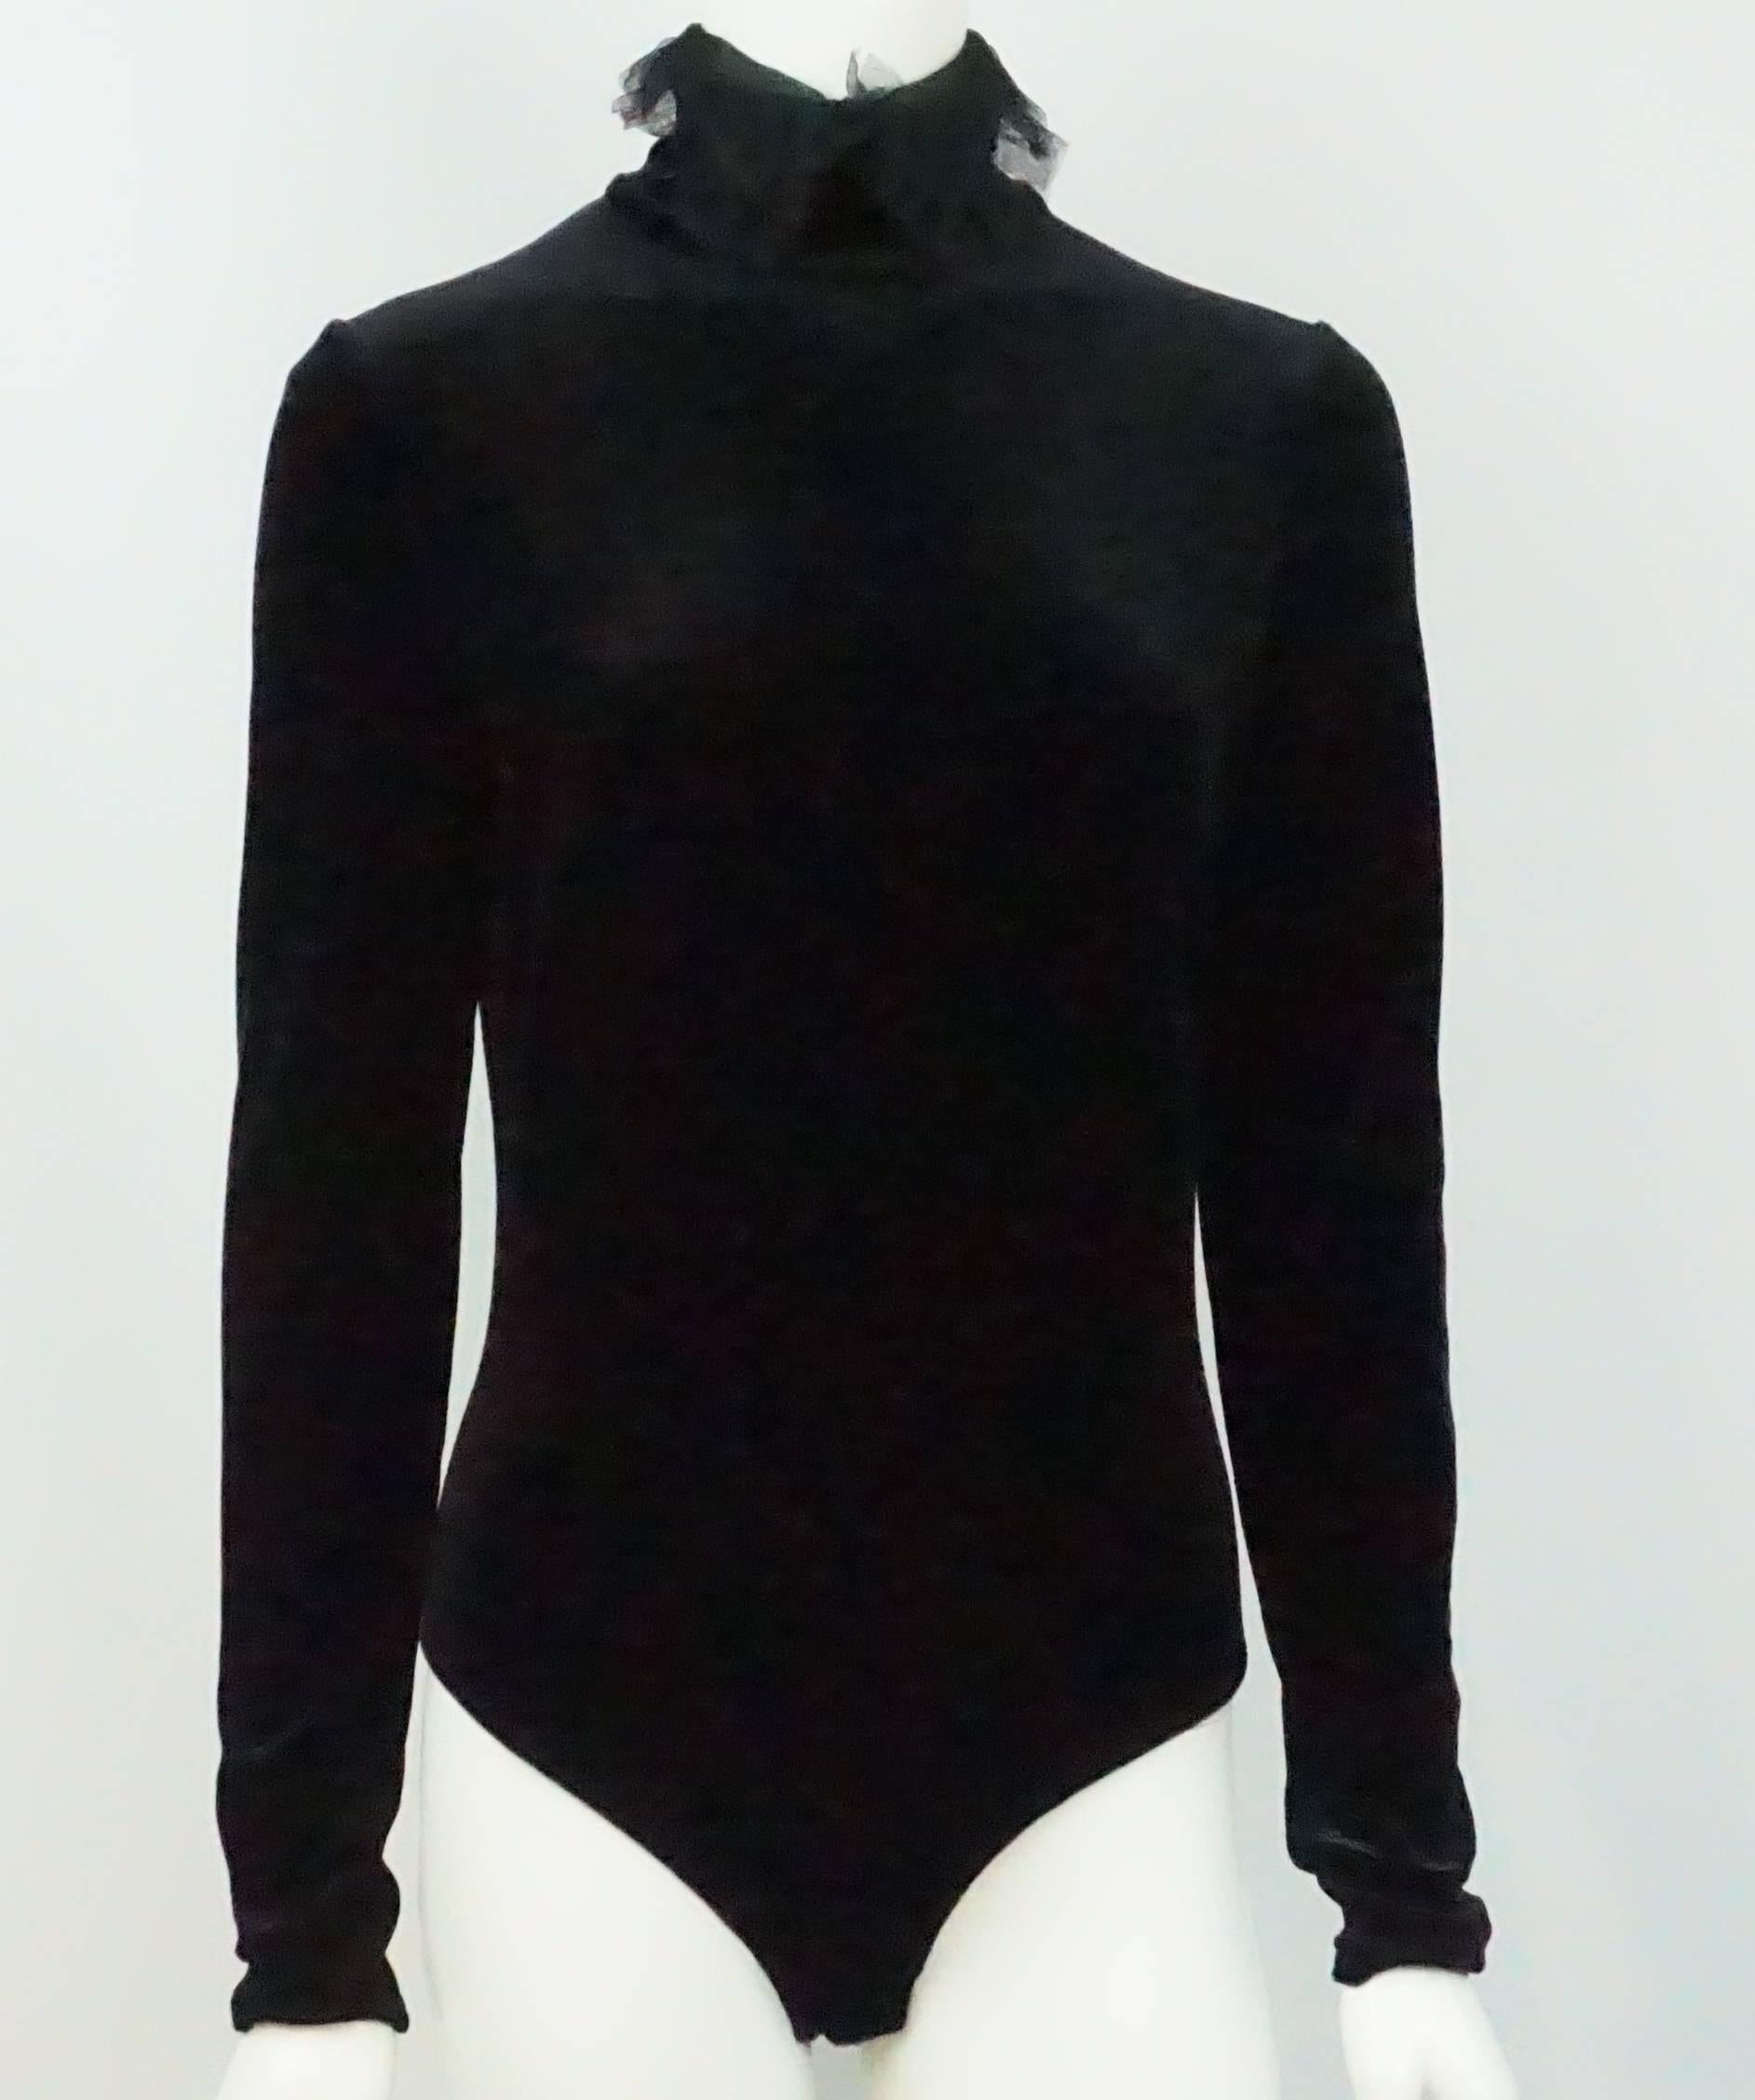 Christian Dior Schwarzer Samt-Bodysuit - 42 - CIRCA 70er Jahre  Der schwarze Samtbodysuit von Dior aus der Vergangenheit hat einen hohen Rollkragen mit Spitzendetail. Es hat einen Rückenreißverschluss sowie zwei Druckknöpfe im Schrittbereich. 